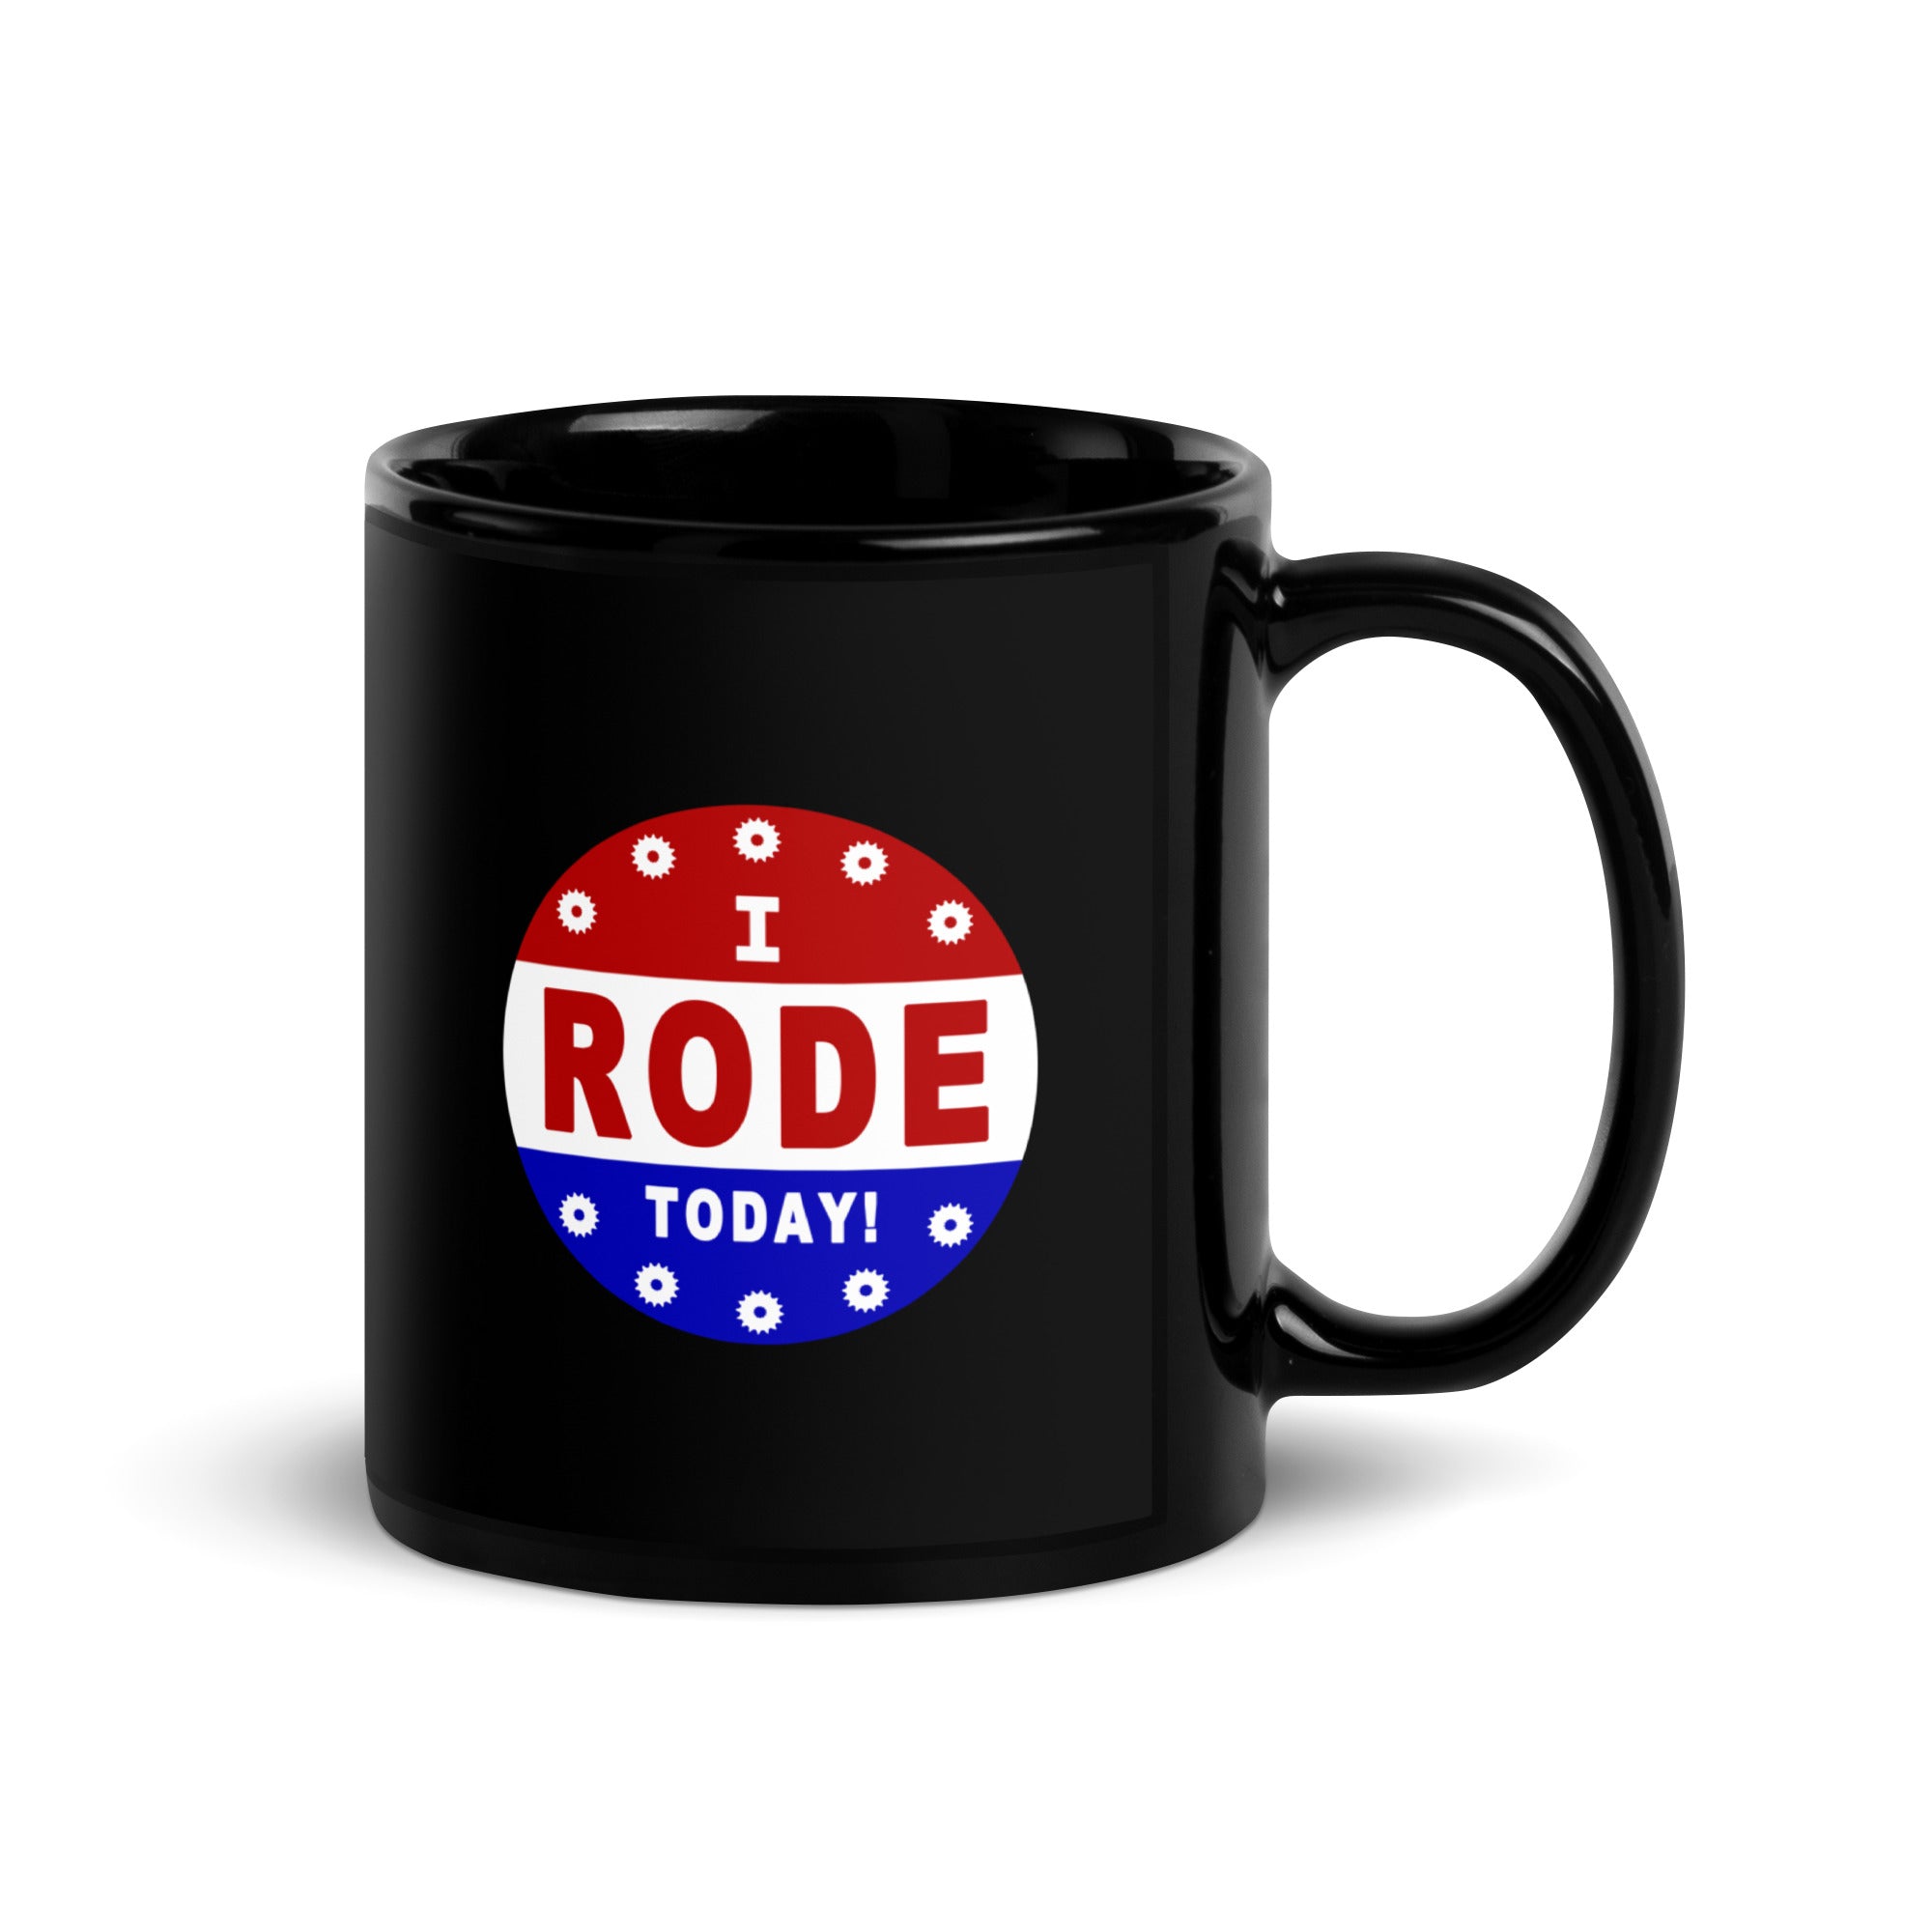 I Rode Today Mug, Ceramic